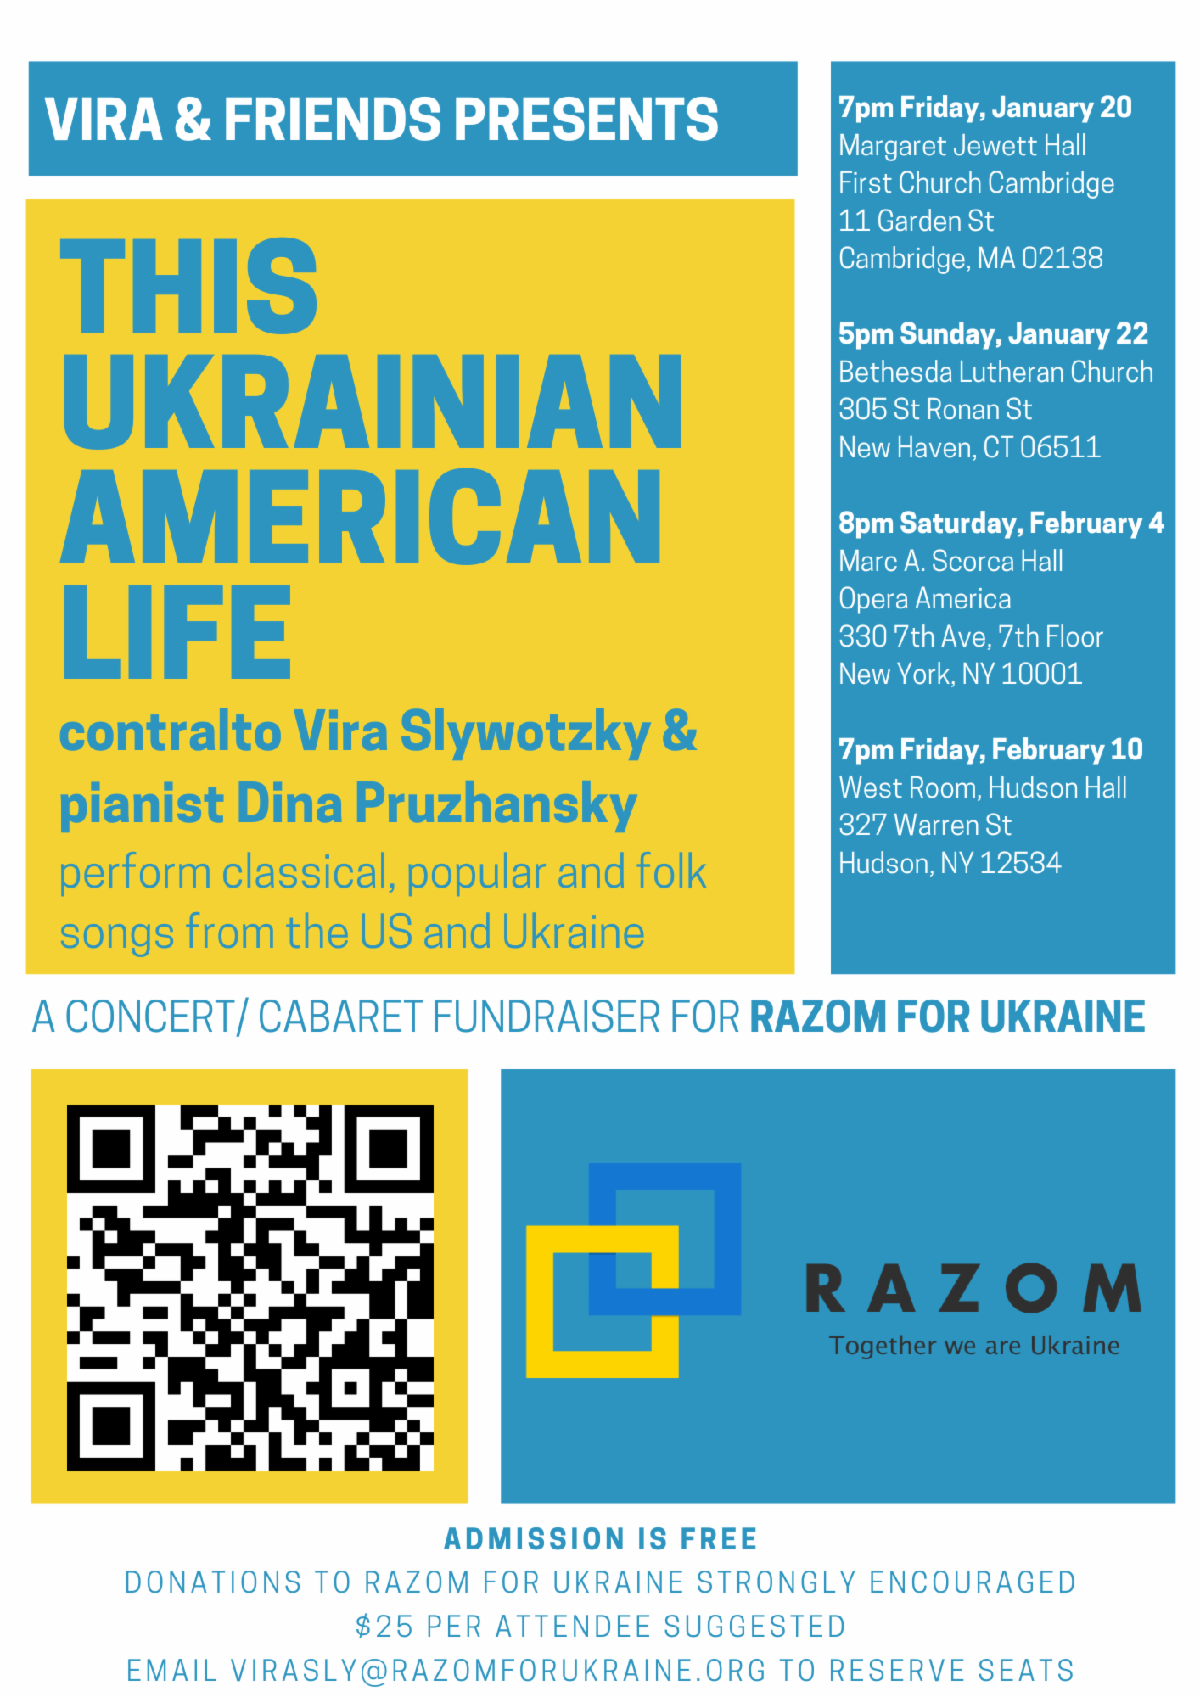 This Ukrainian American Life Concert/Cabaret Fundraising